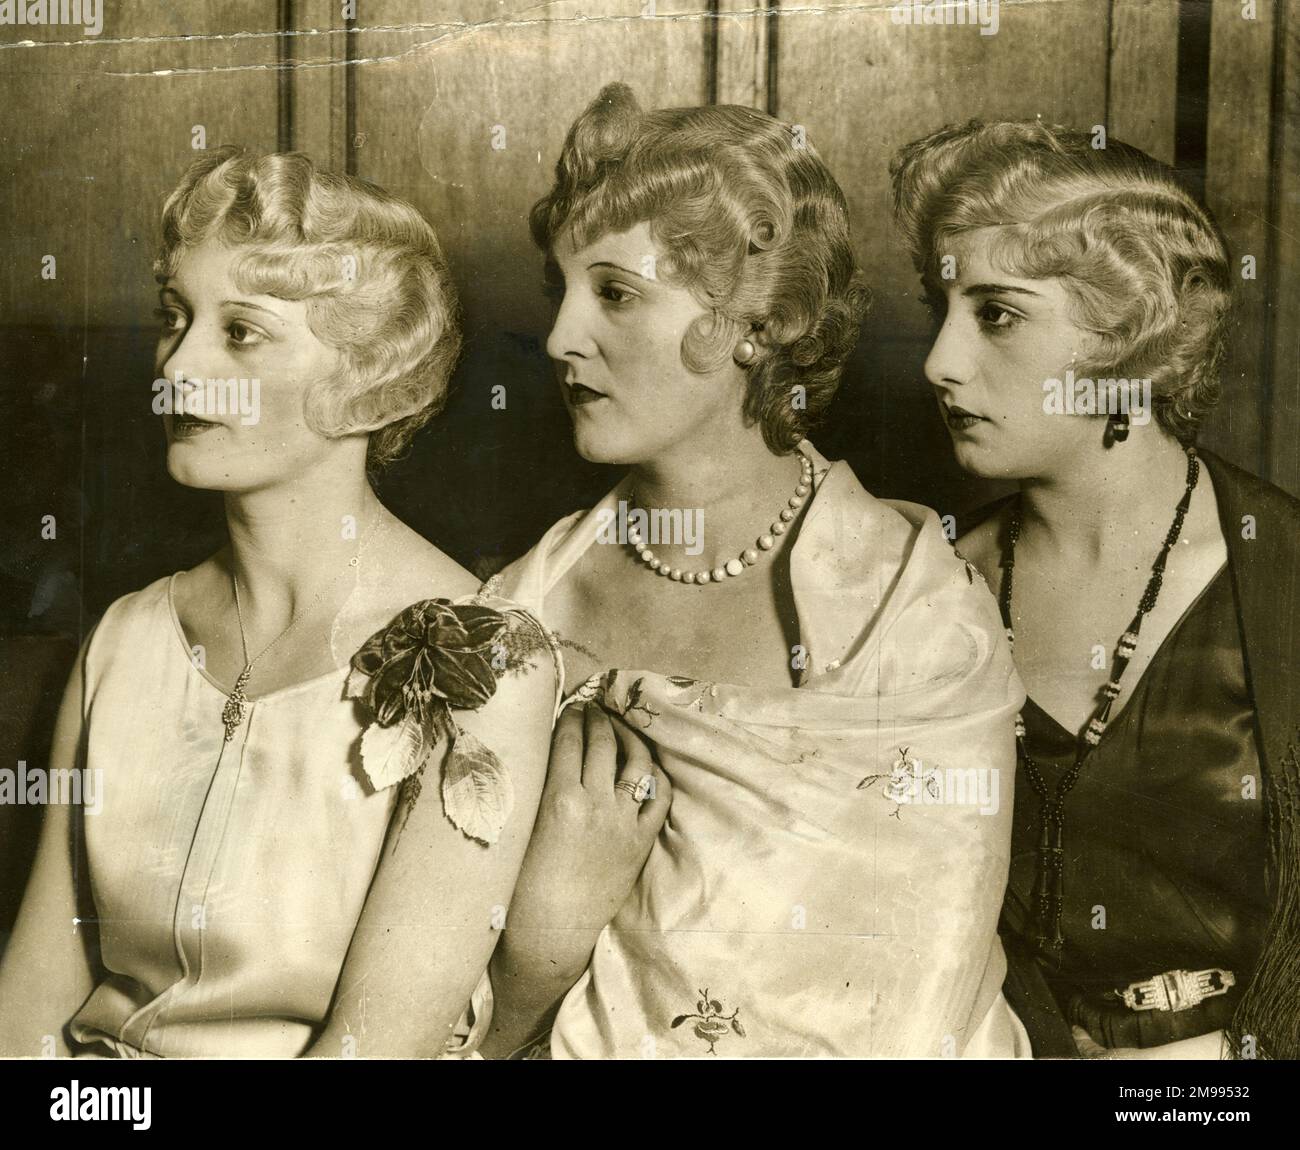 Lockiges Haar bei typischen Haaren von 1930. Stockfoto